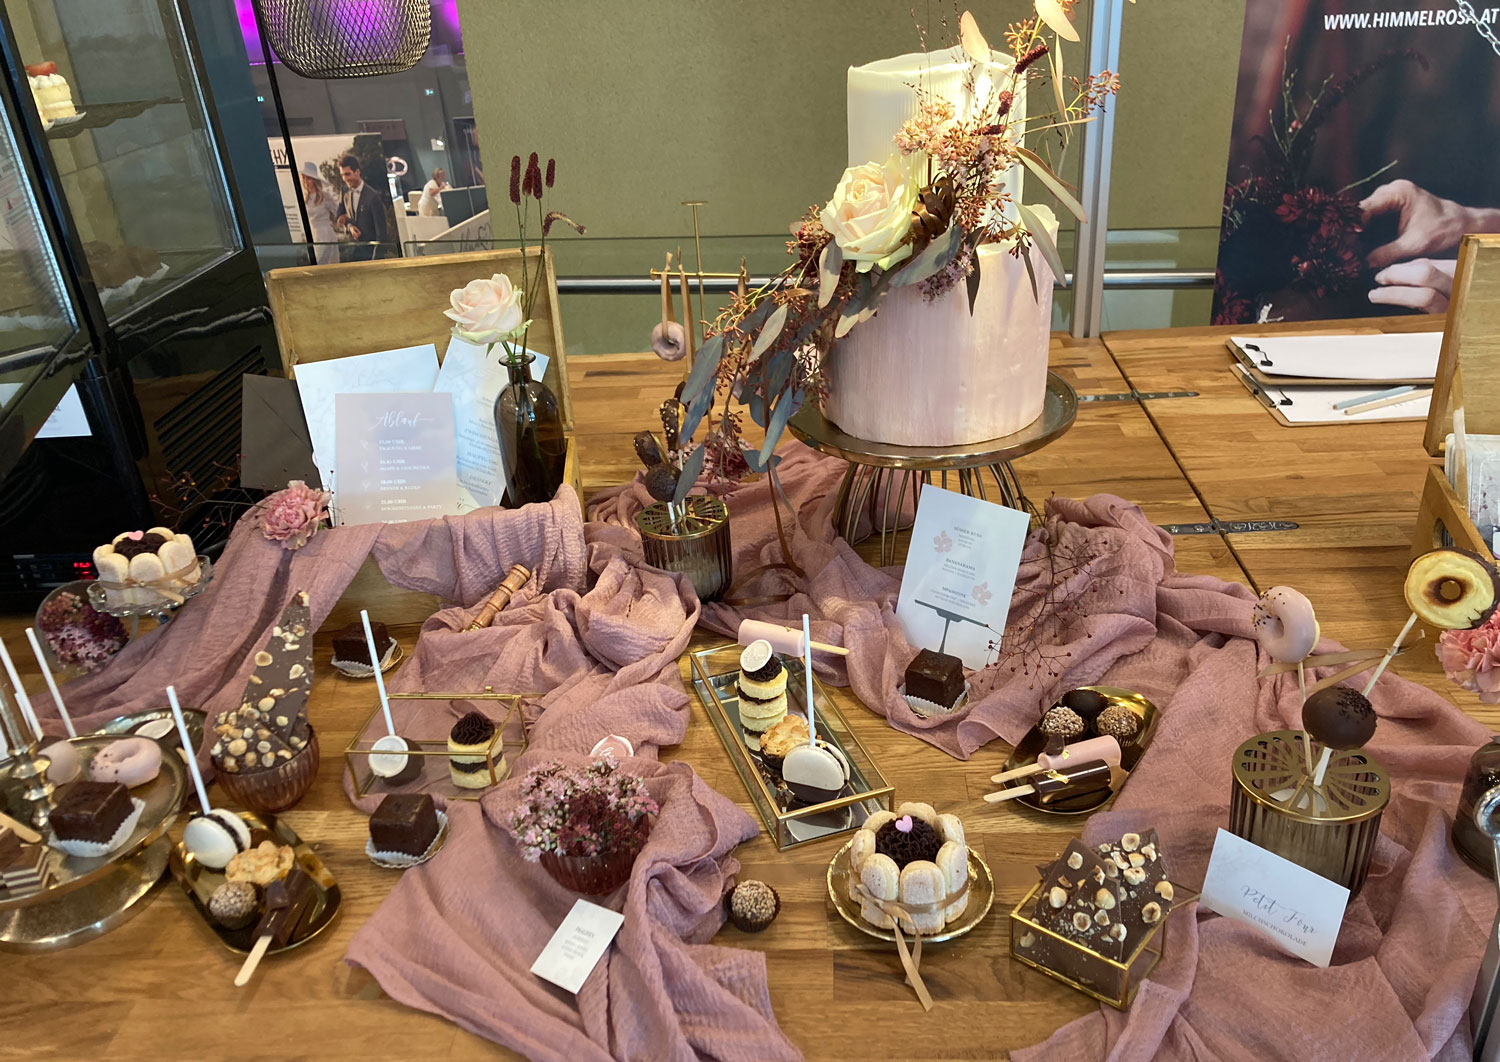 APELINA als Sweet Table von Himmelrosa auf der Hochzeitsmesse Perchtoldsdorf